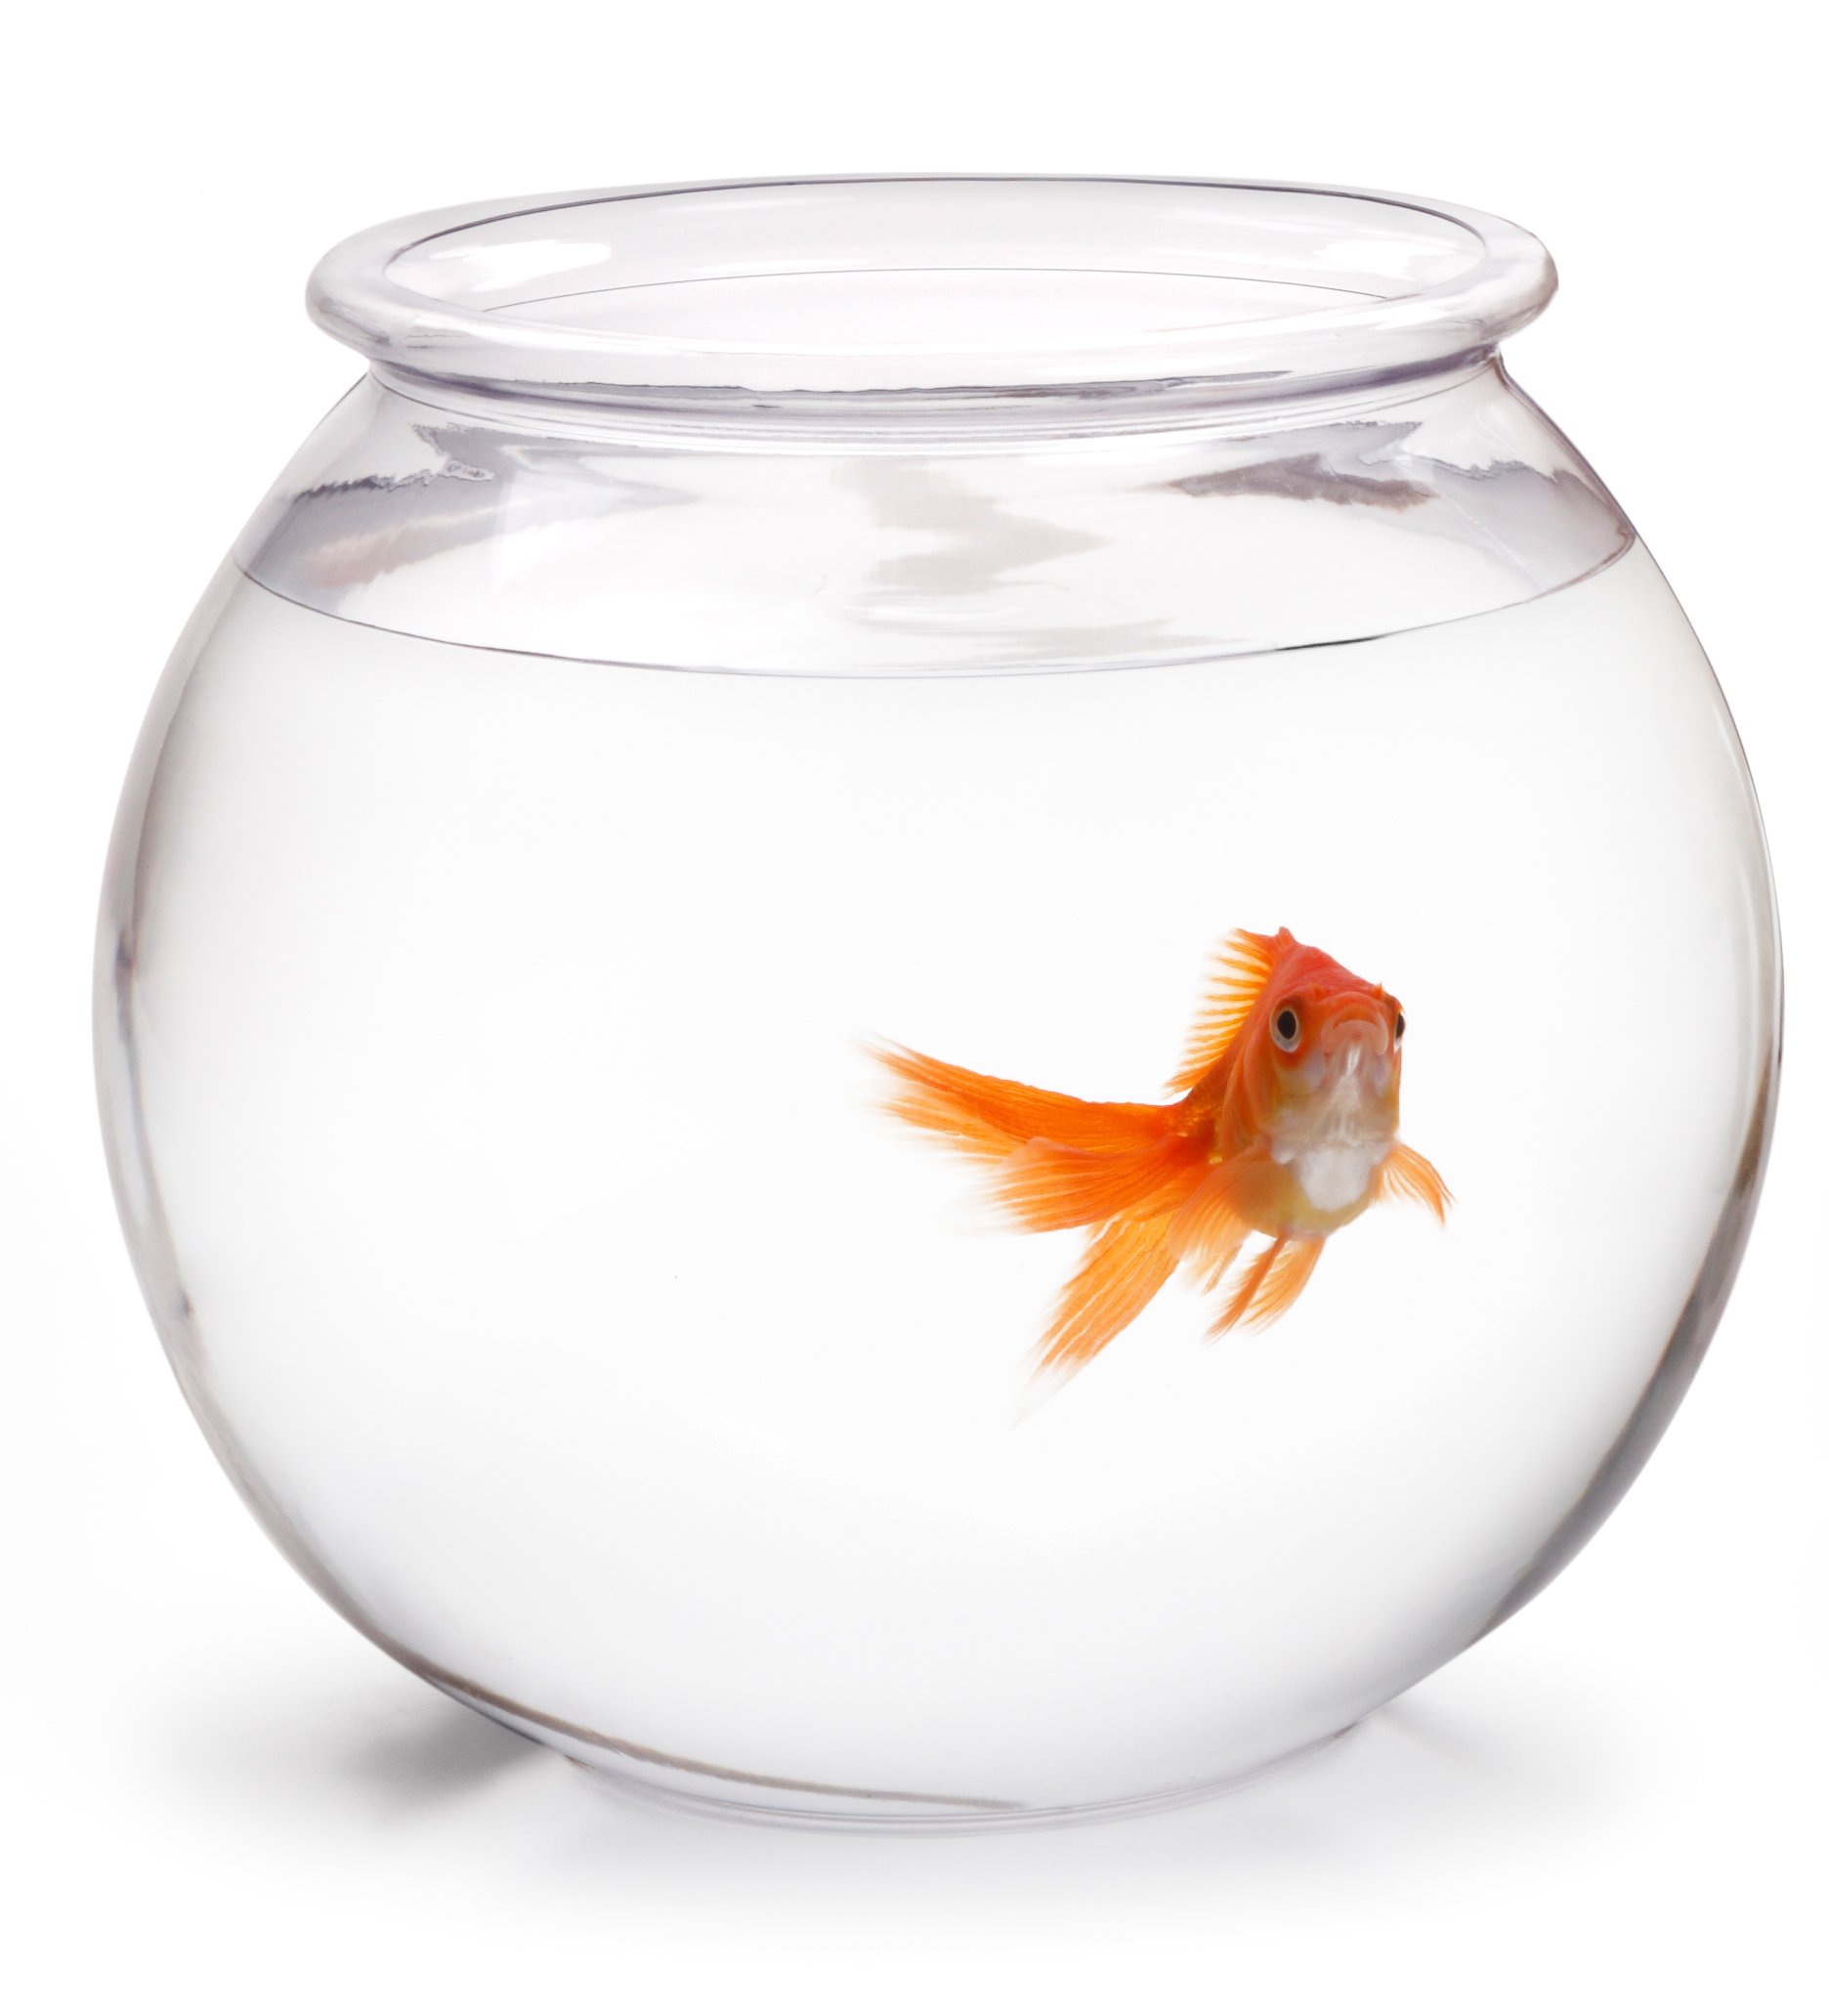 Видеть рыбок в аквариуме. Аквариум Gold Fish Bowl 17л оранжевый. Круглый аквариум с рыбками. Золотая рыбка в круглом аквариуме. Одна рыбка в круглом аквариуме.